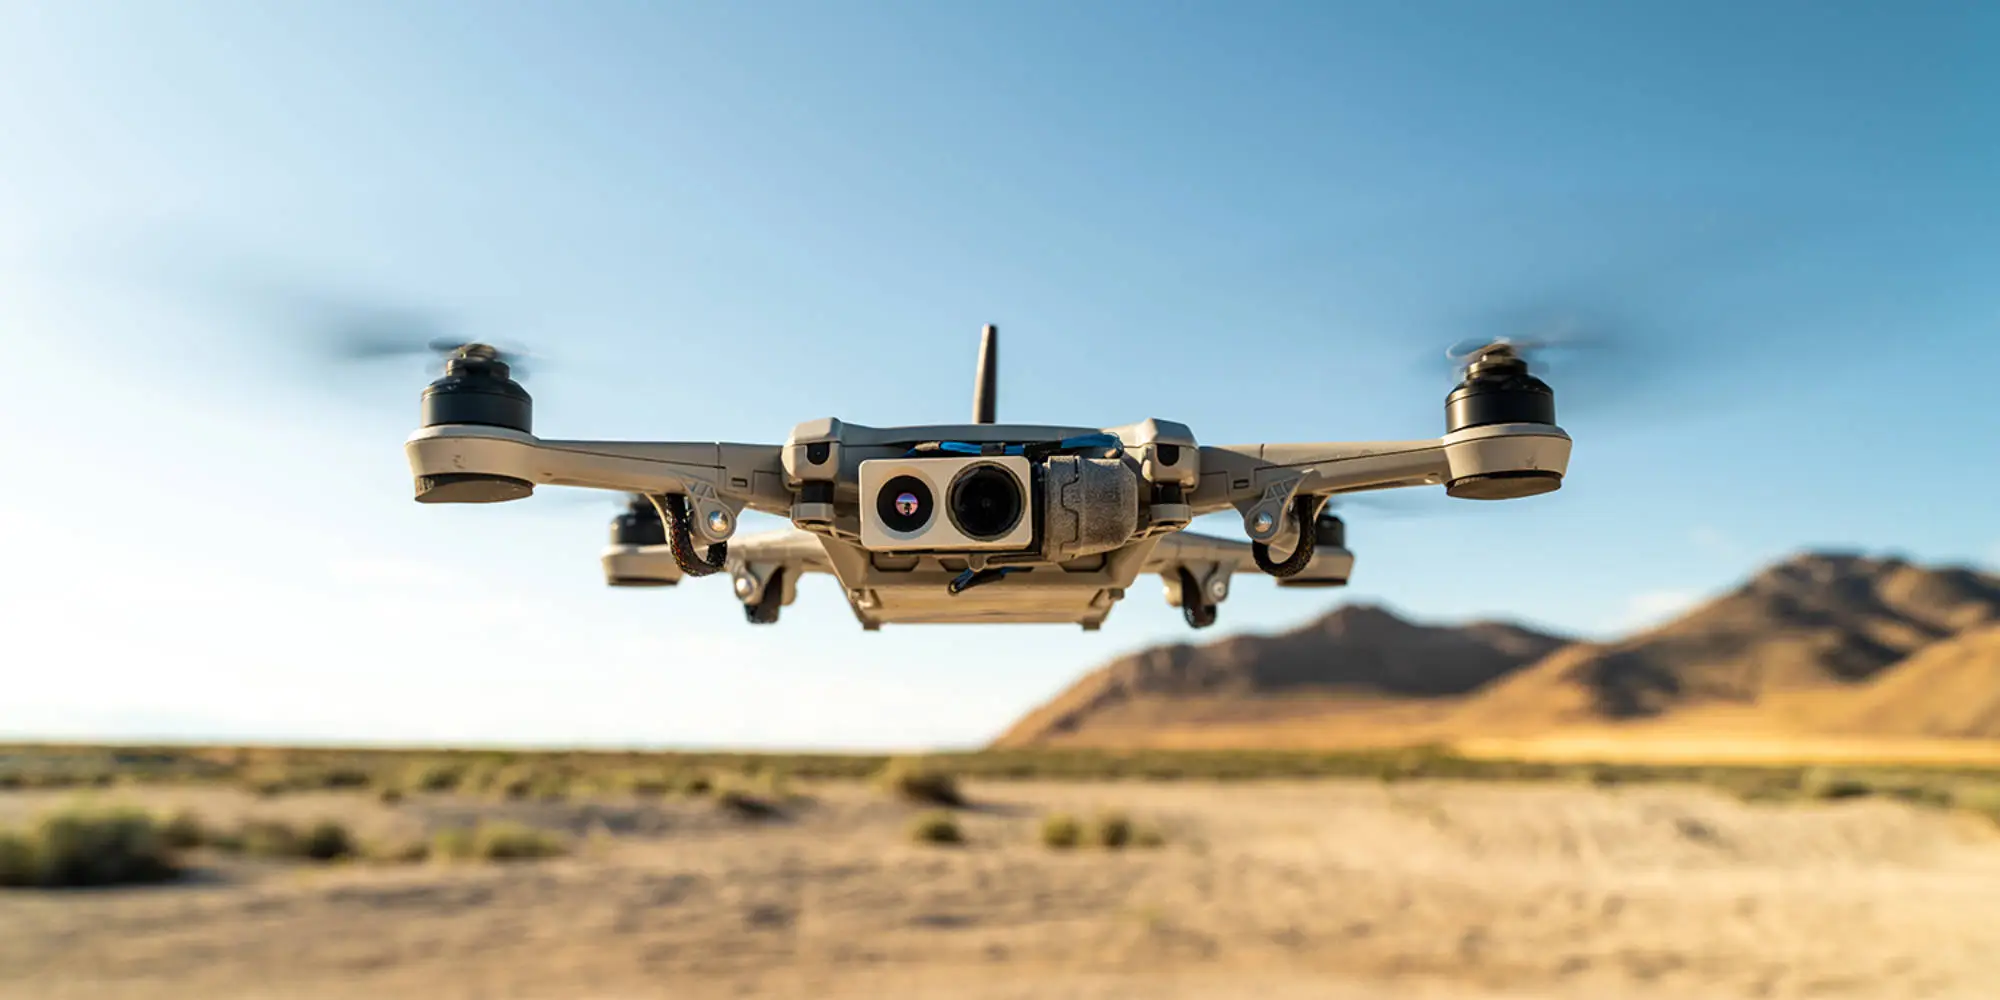 Technologia Reveal wyszkoliła drony Golden Eagle, aby natychmiast tworzyły mapy 3D dla wojska